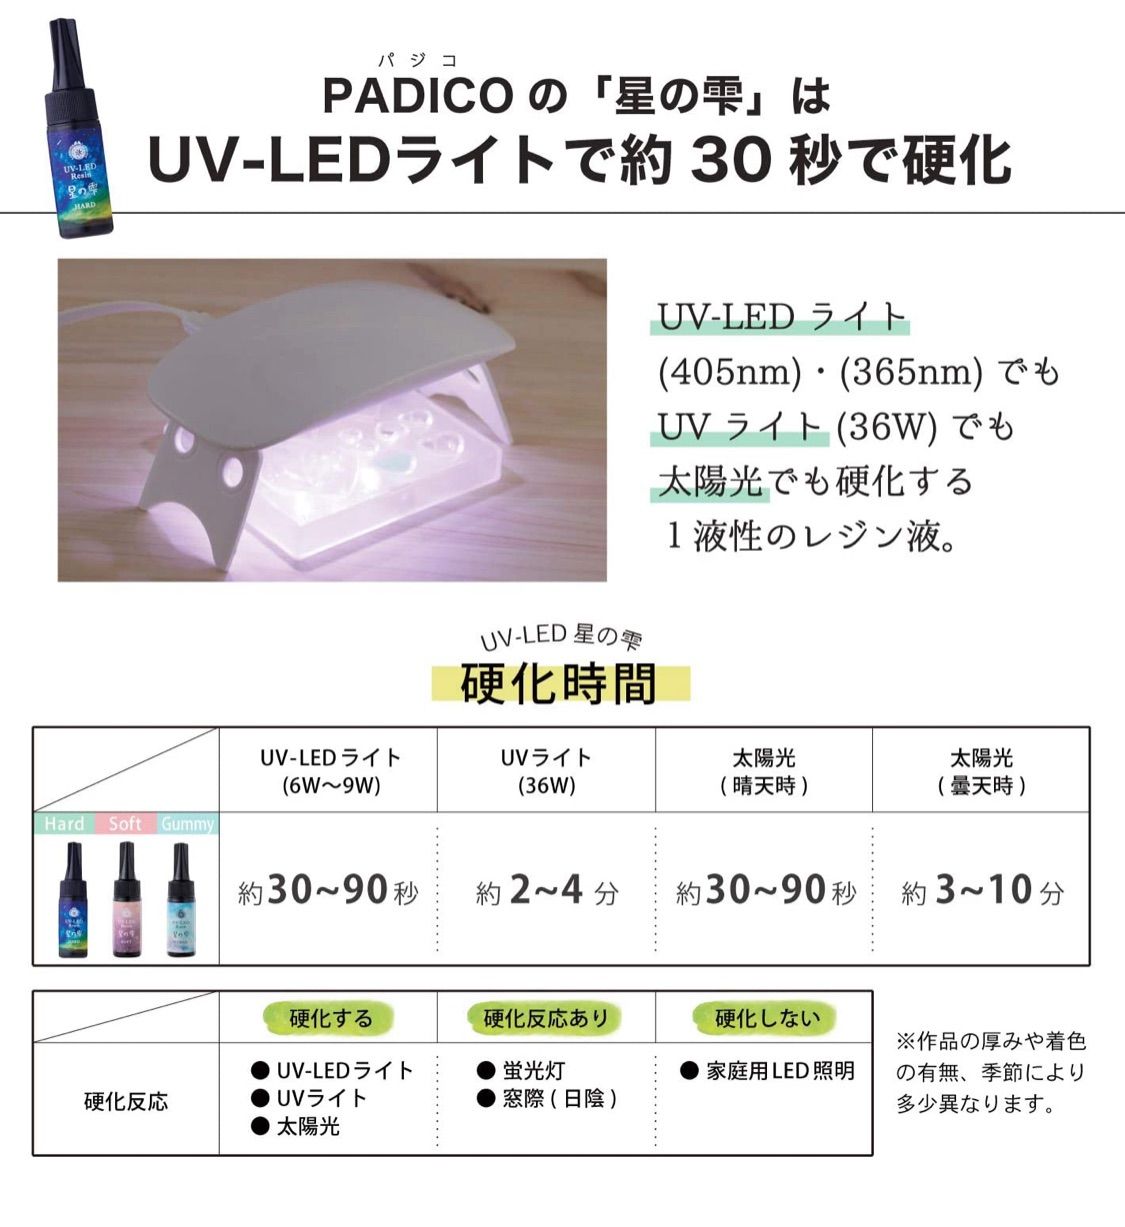 ☆星の雫 500g 特価販売 UVレジン液 大量 日本製 パジコ☆ - メルカリ